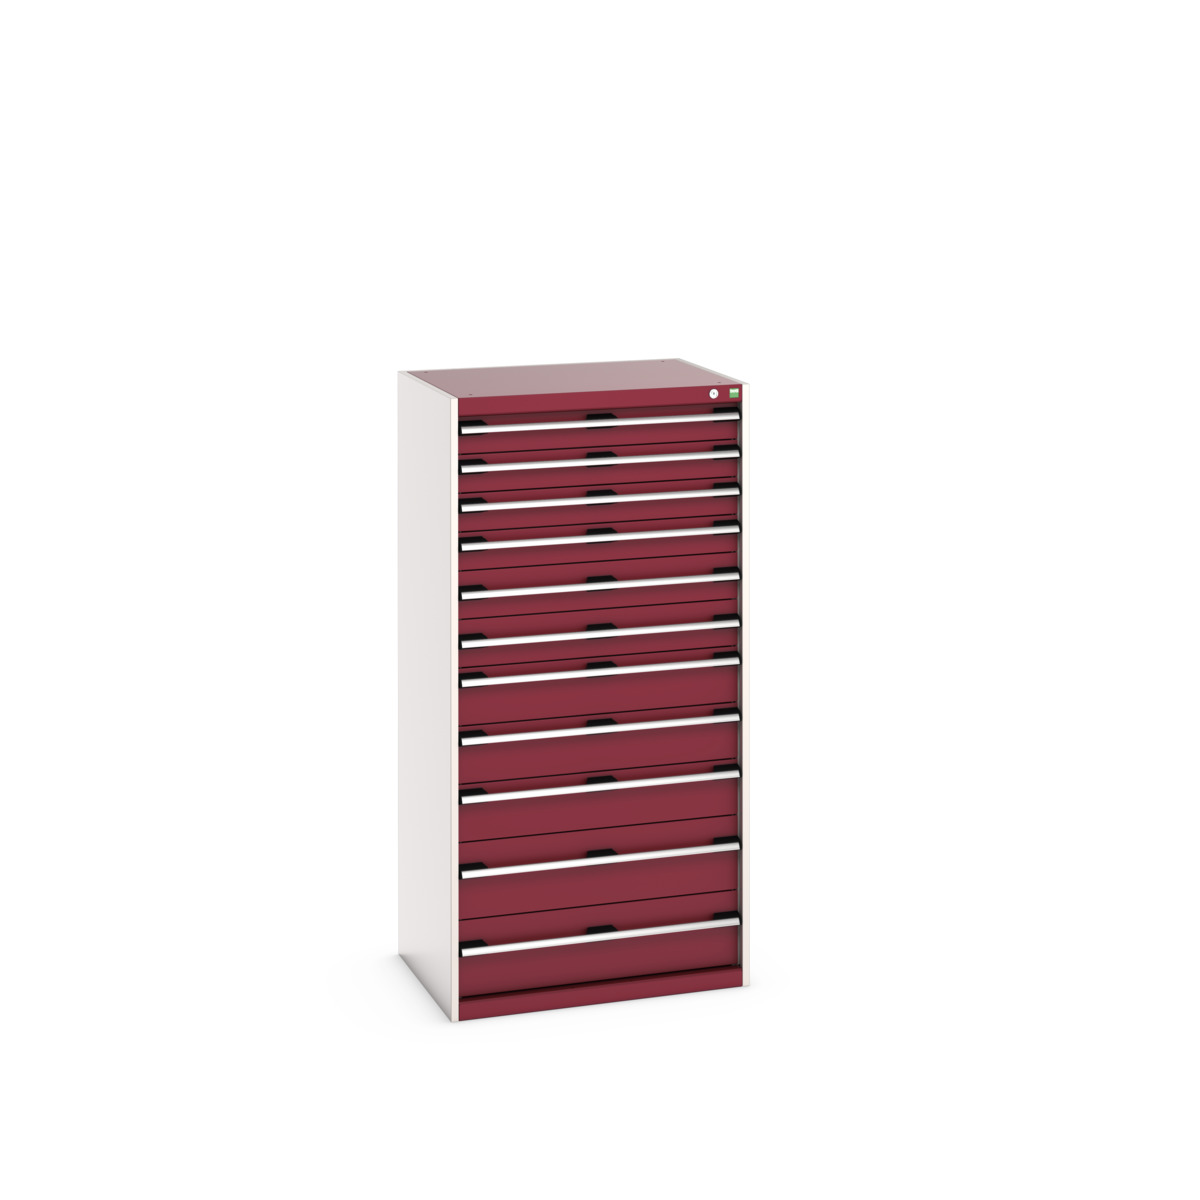 40020070.24V - cubio drawer cabinet